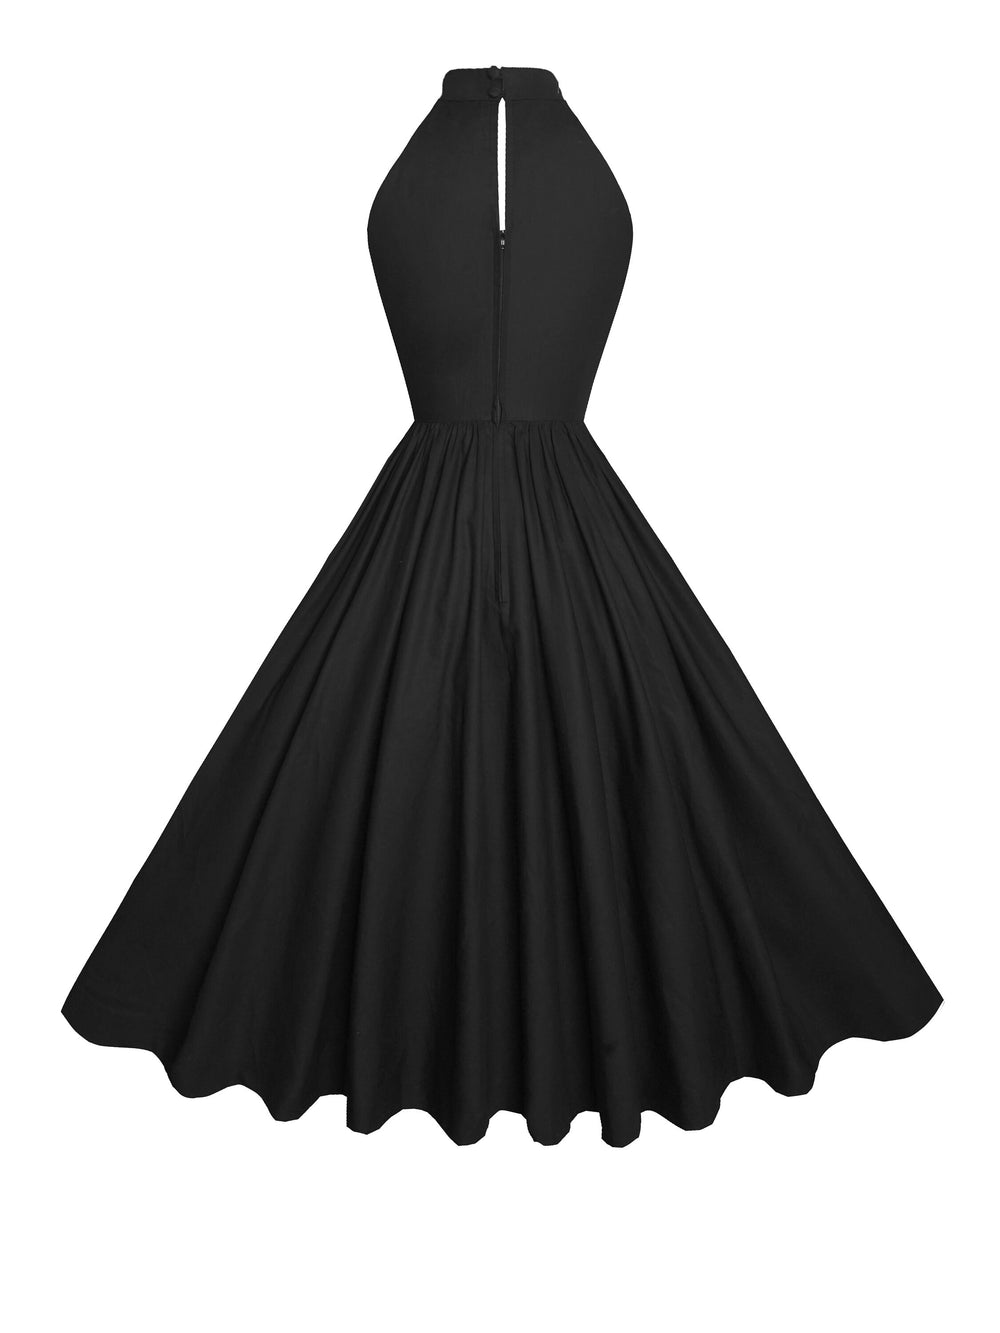 RTS - Size S - Rita Dress in Raven Black Cotton